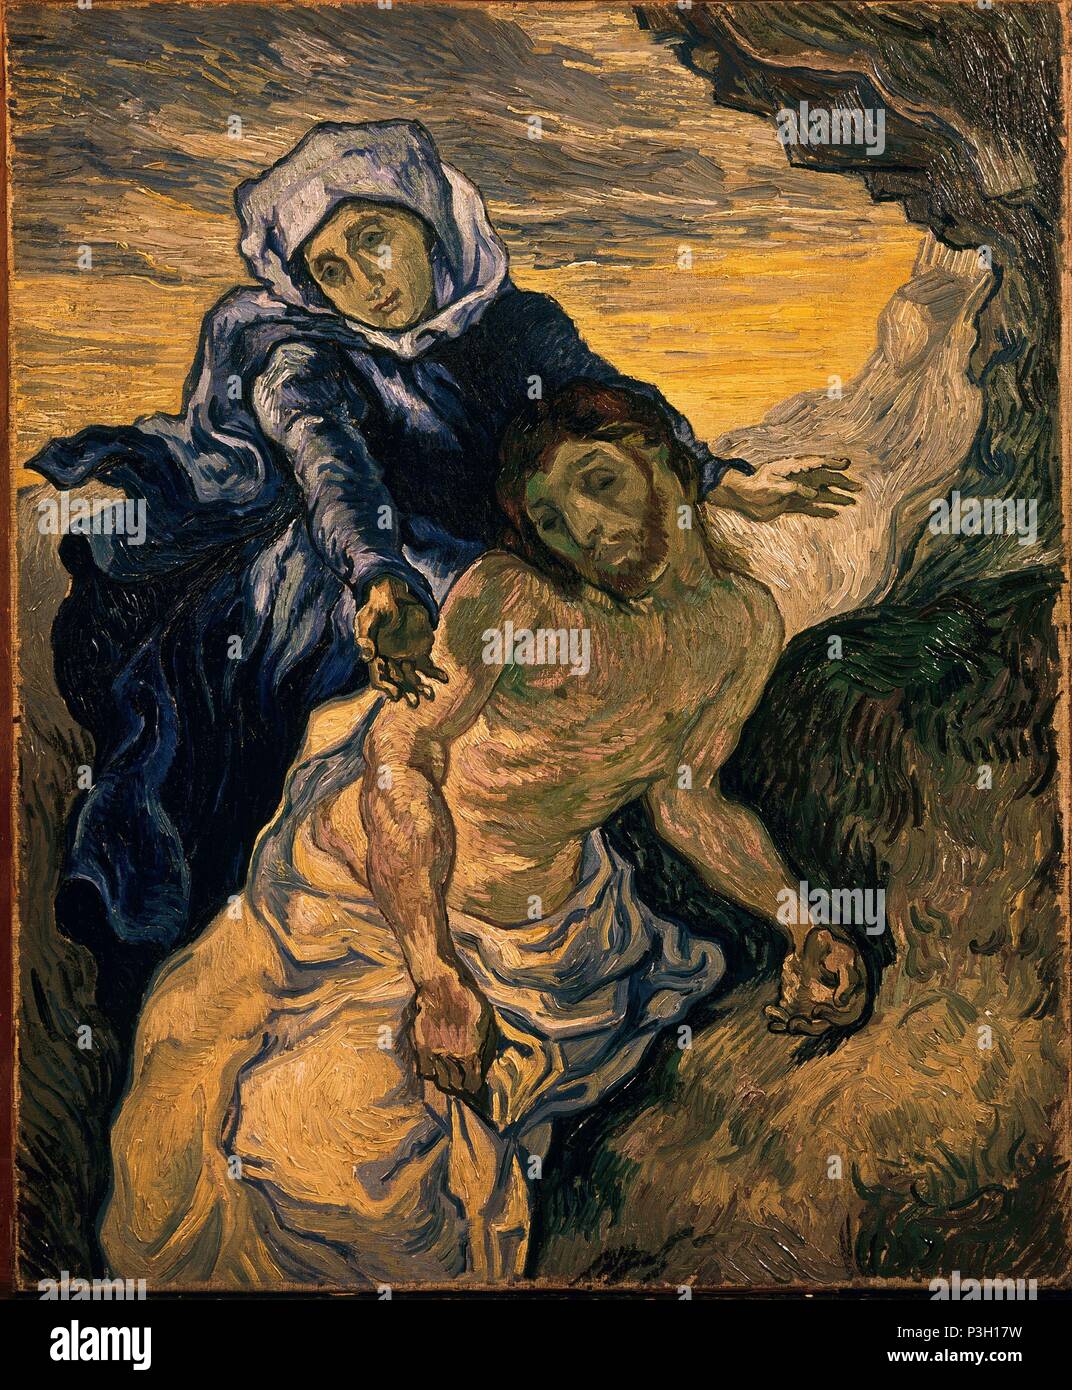 Niederländische Schule. Die Pietà (nach Delacroix). 1890. Öl auf Leinwand (73 x 60 cm). Amsterdam, Van Gogh Museum. Autor: Vincent van Gogh (1853-1890). Ort: Van Gogh Museum, Amsterdam, HOLANDA. Stockfoto